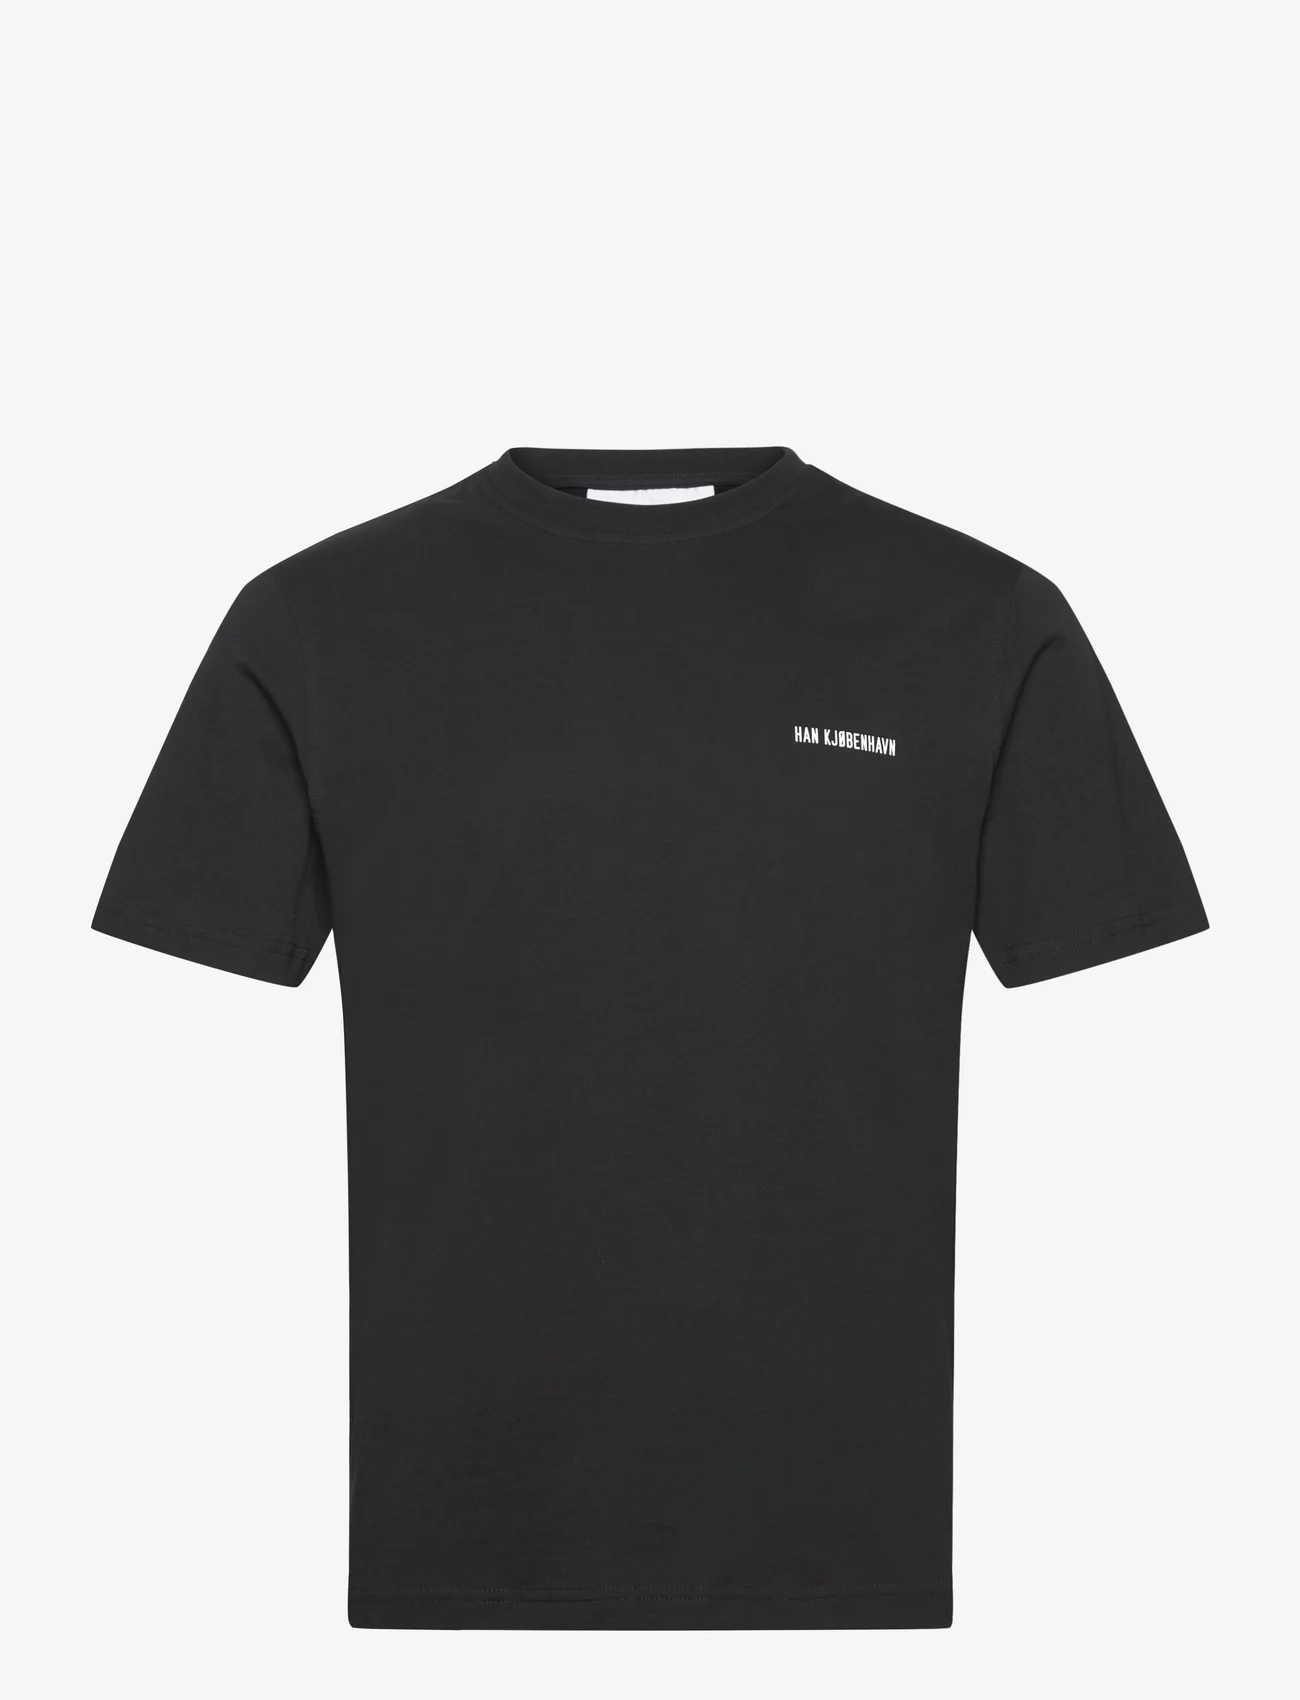 HAN Kjøbenhavn - Regular T-shirt Short sleeve - kortermede t-skjorter - black - 0